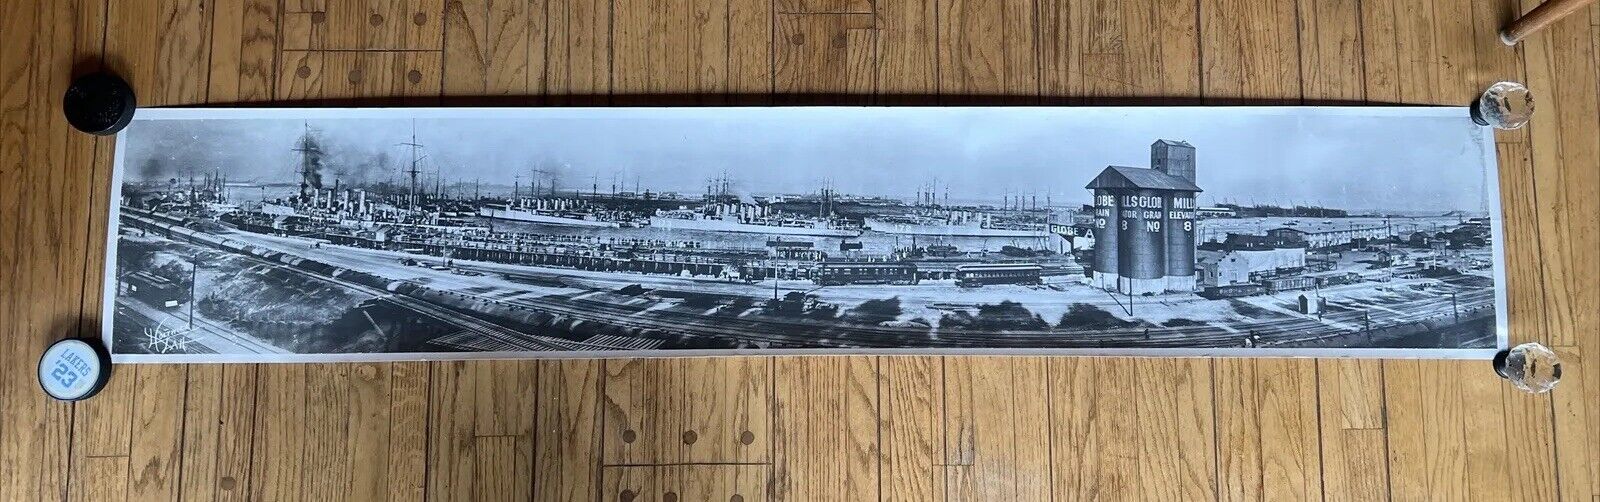 Rare 1940's Los Angeles Harbor (San Pedro) Shipyard Panoramic Photo During WW2